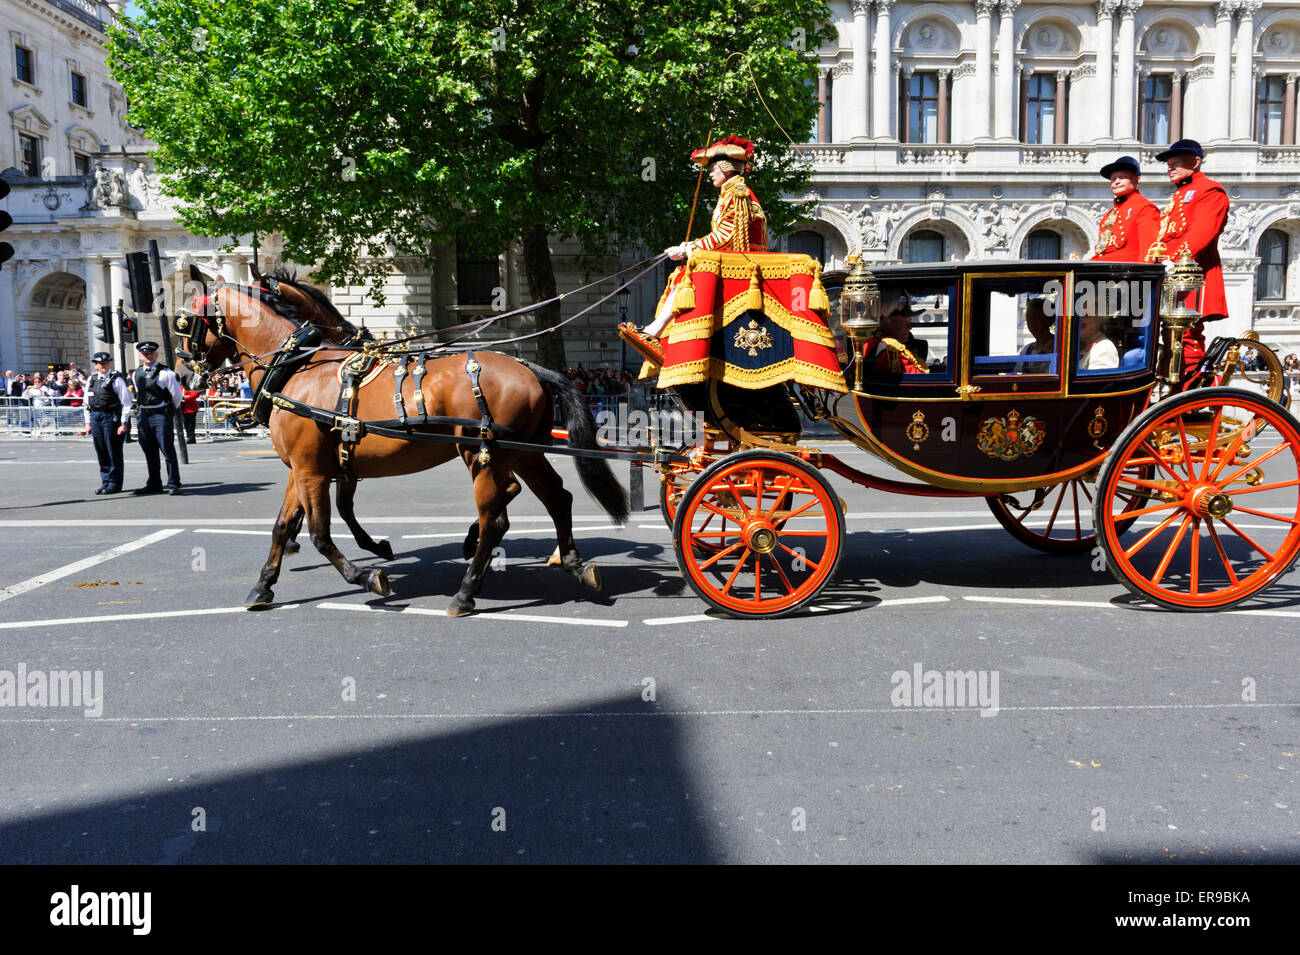 Un carruaje real durante la procesión de la apertura del Parlamento, Londres, Inglaterra. Foto de stock